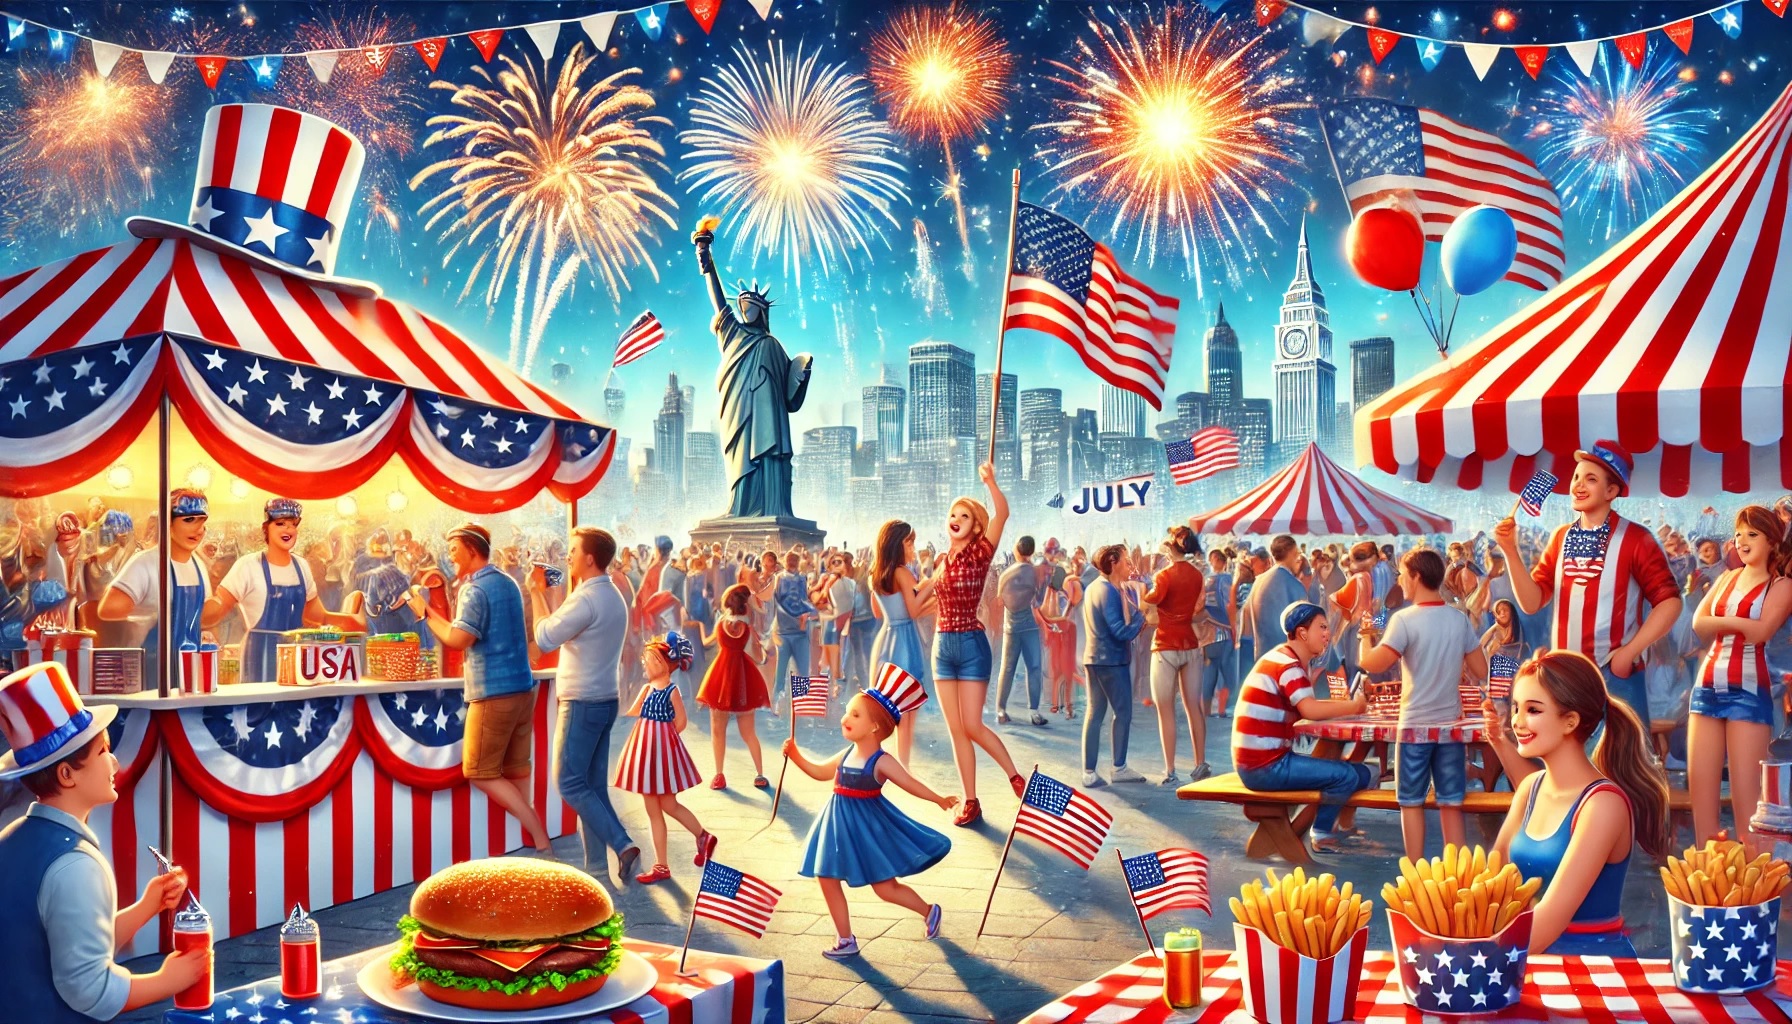 Das Bild zeigt die lebhaften Feierlichkeiten zum 4. Juli in den USA mit buntem Feuerwerk, Menschen in patriotischen Outfits und Ständen mit amerikanischen Flaggen. US-Markt, Fonds, Shortpositionen, Rapskurse, Matif